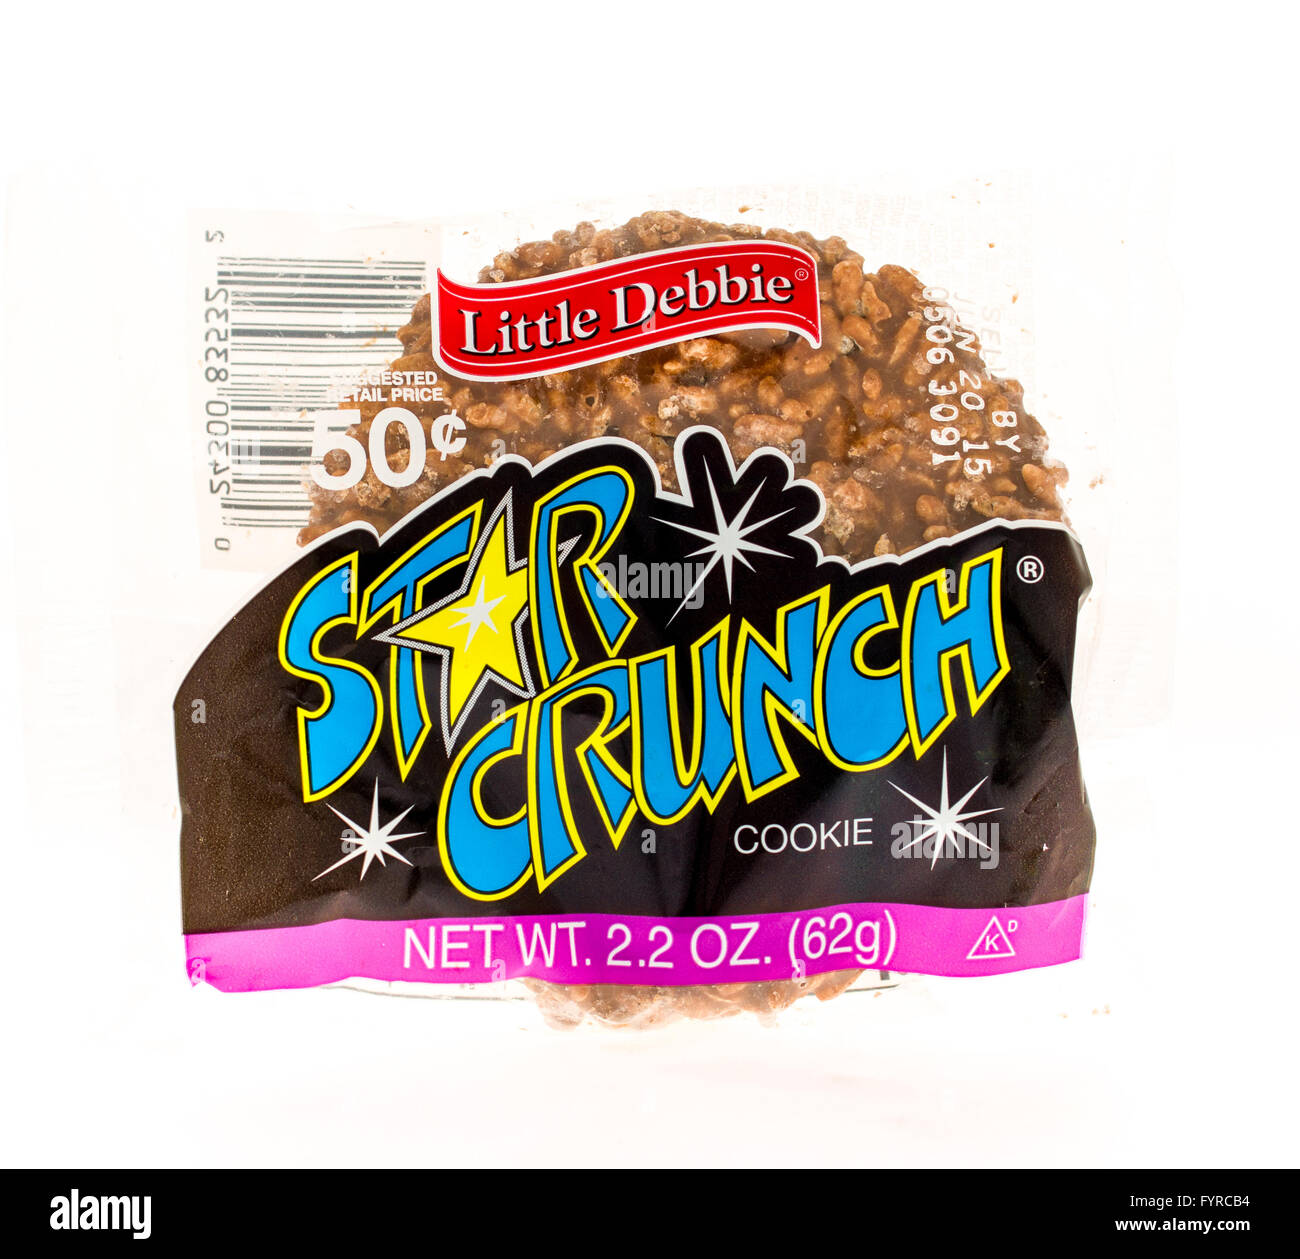 little debbie ice cream star crunch